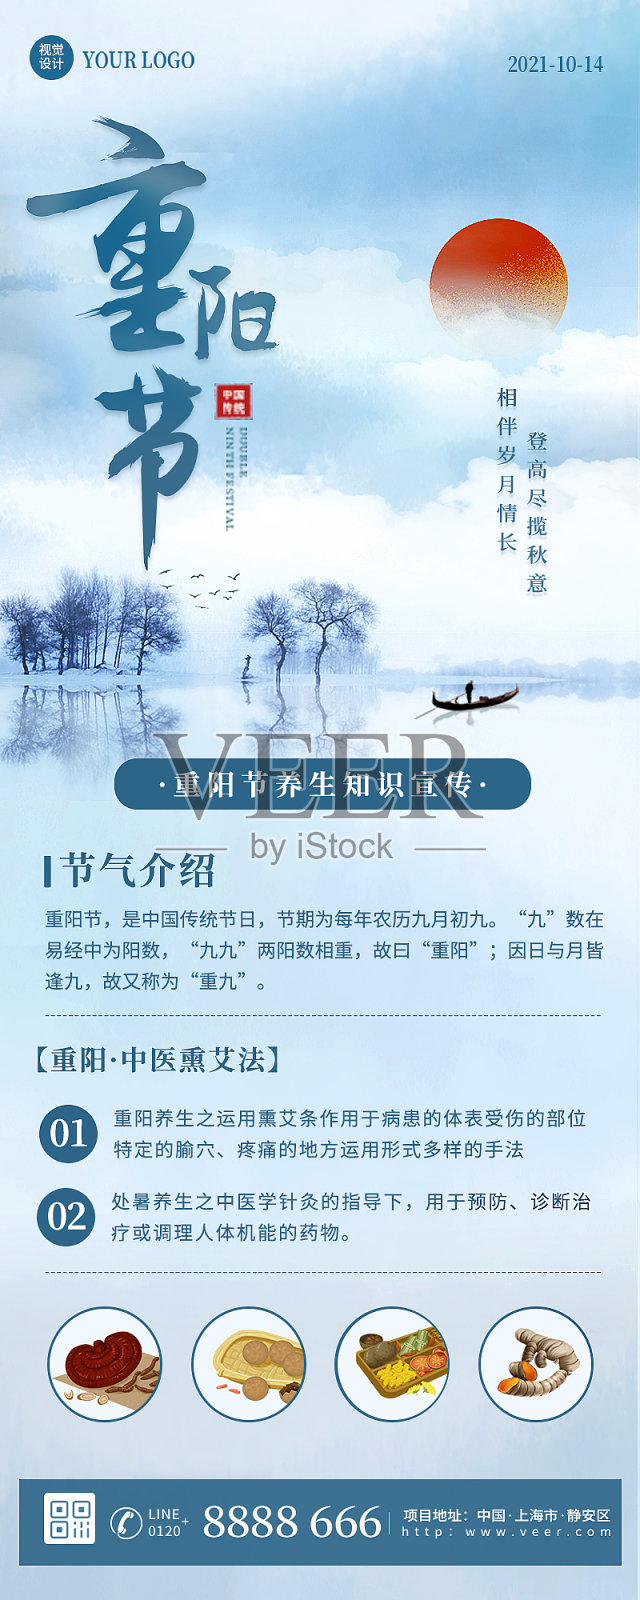 重阳节节气养生宣传中国风营销长图设计模板素材